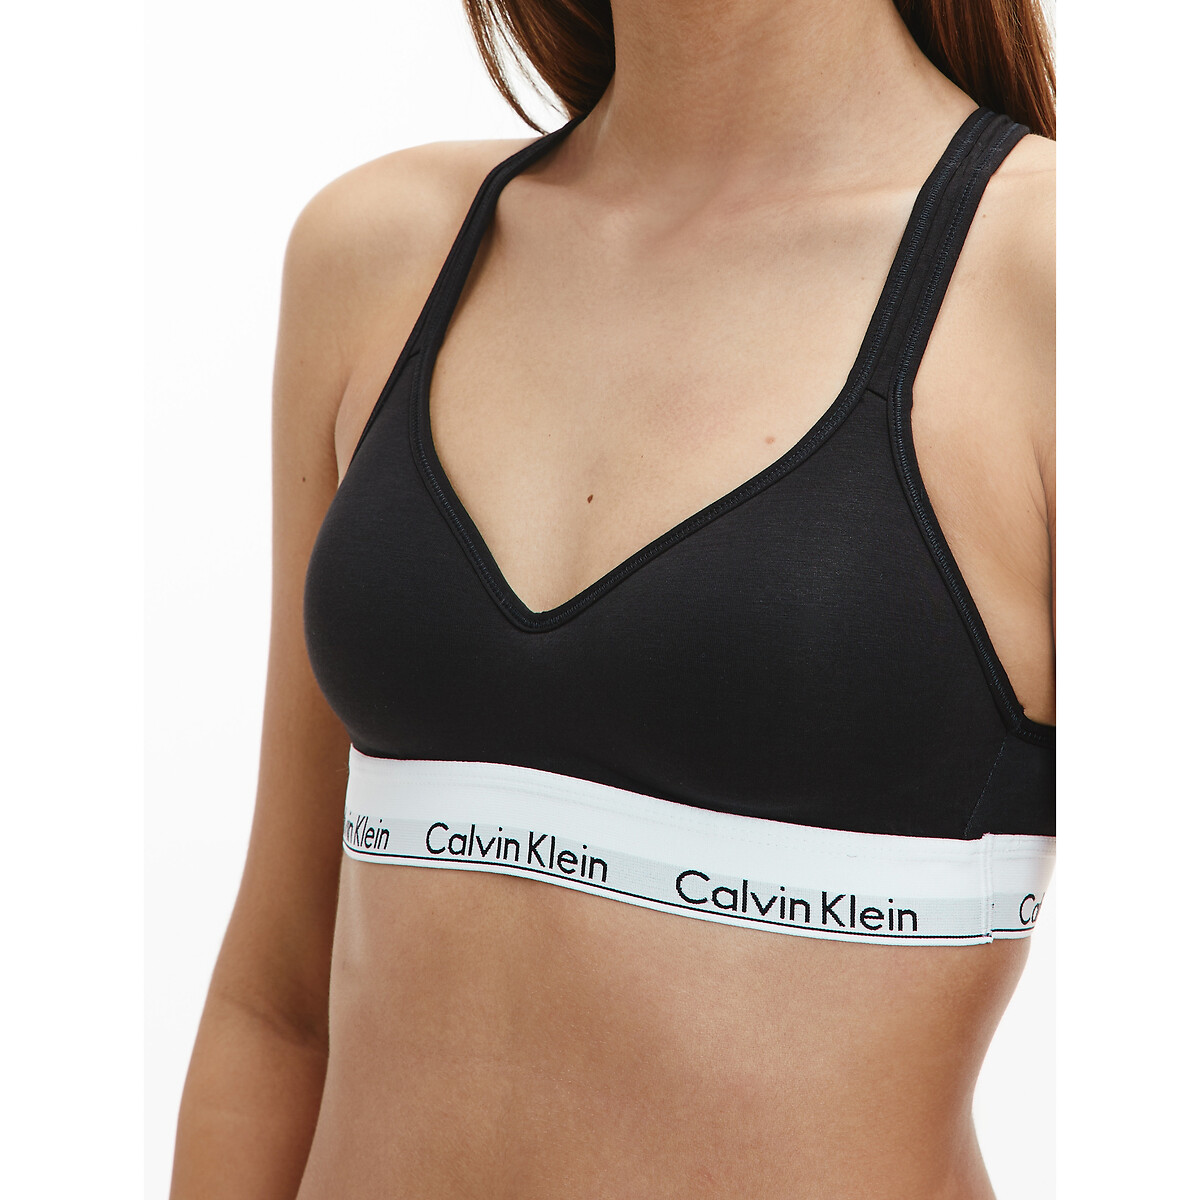 Bustier-bh mit logo-schriftzug Calvin Klein | La Underwear Redoute